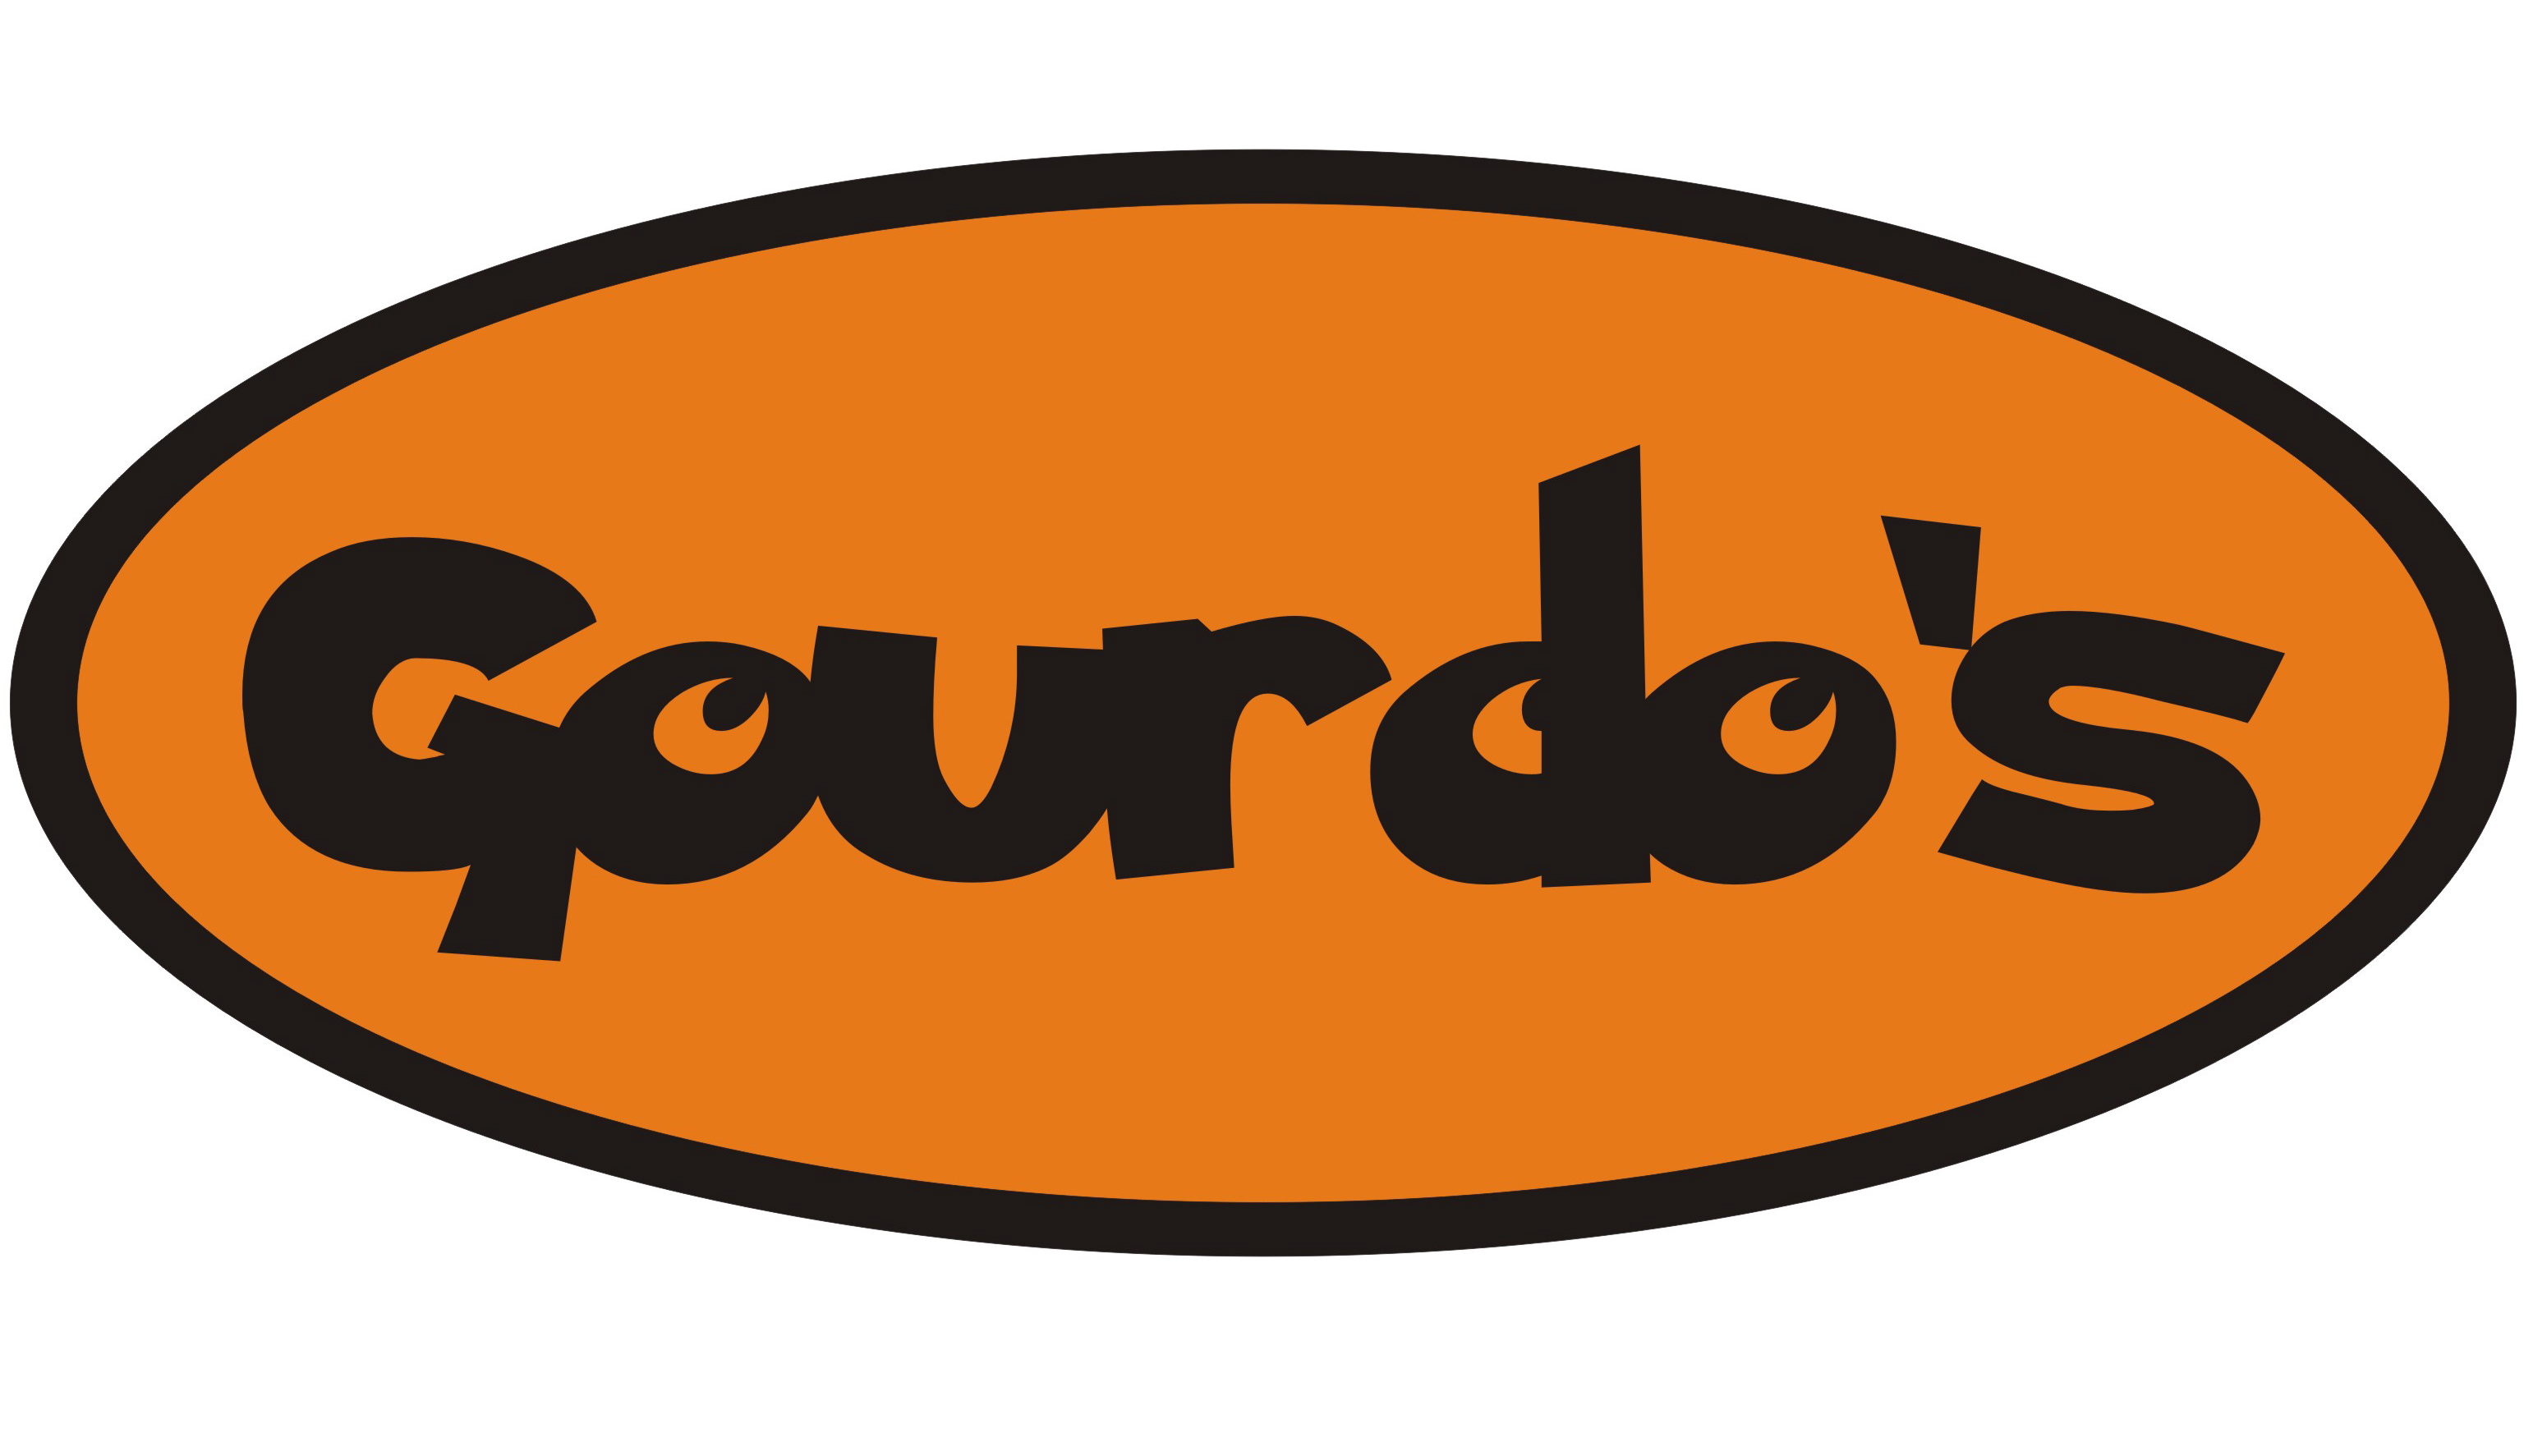 Gourdos Website